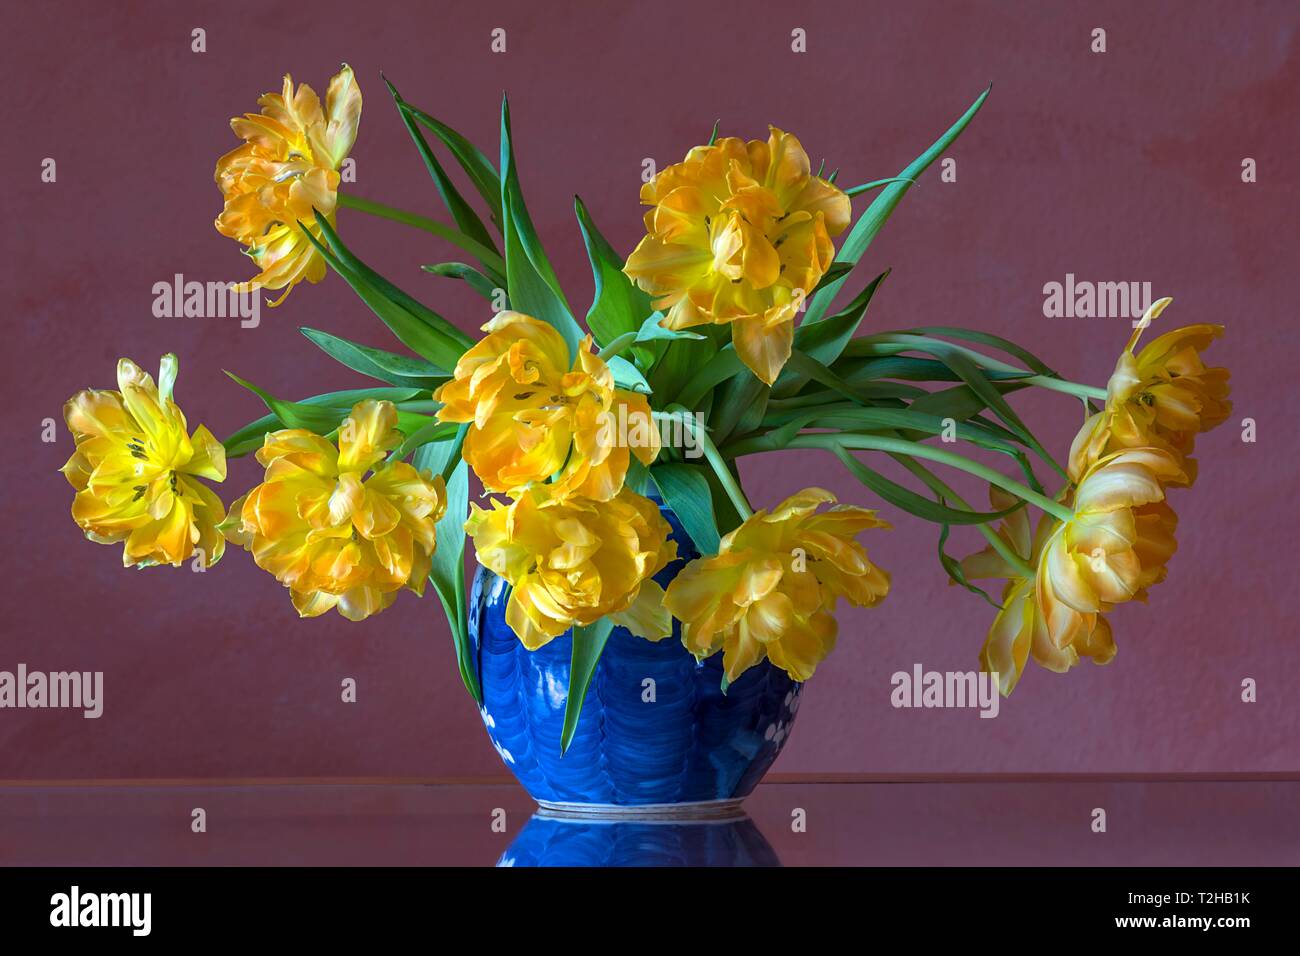 Alamy -Fotos a blue in vase - -Bildmaterial und 2 - Seite in Flowers hoher Auflösung